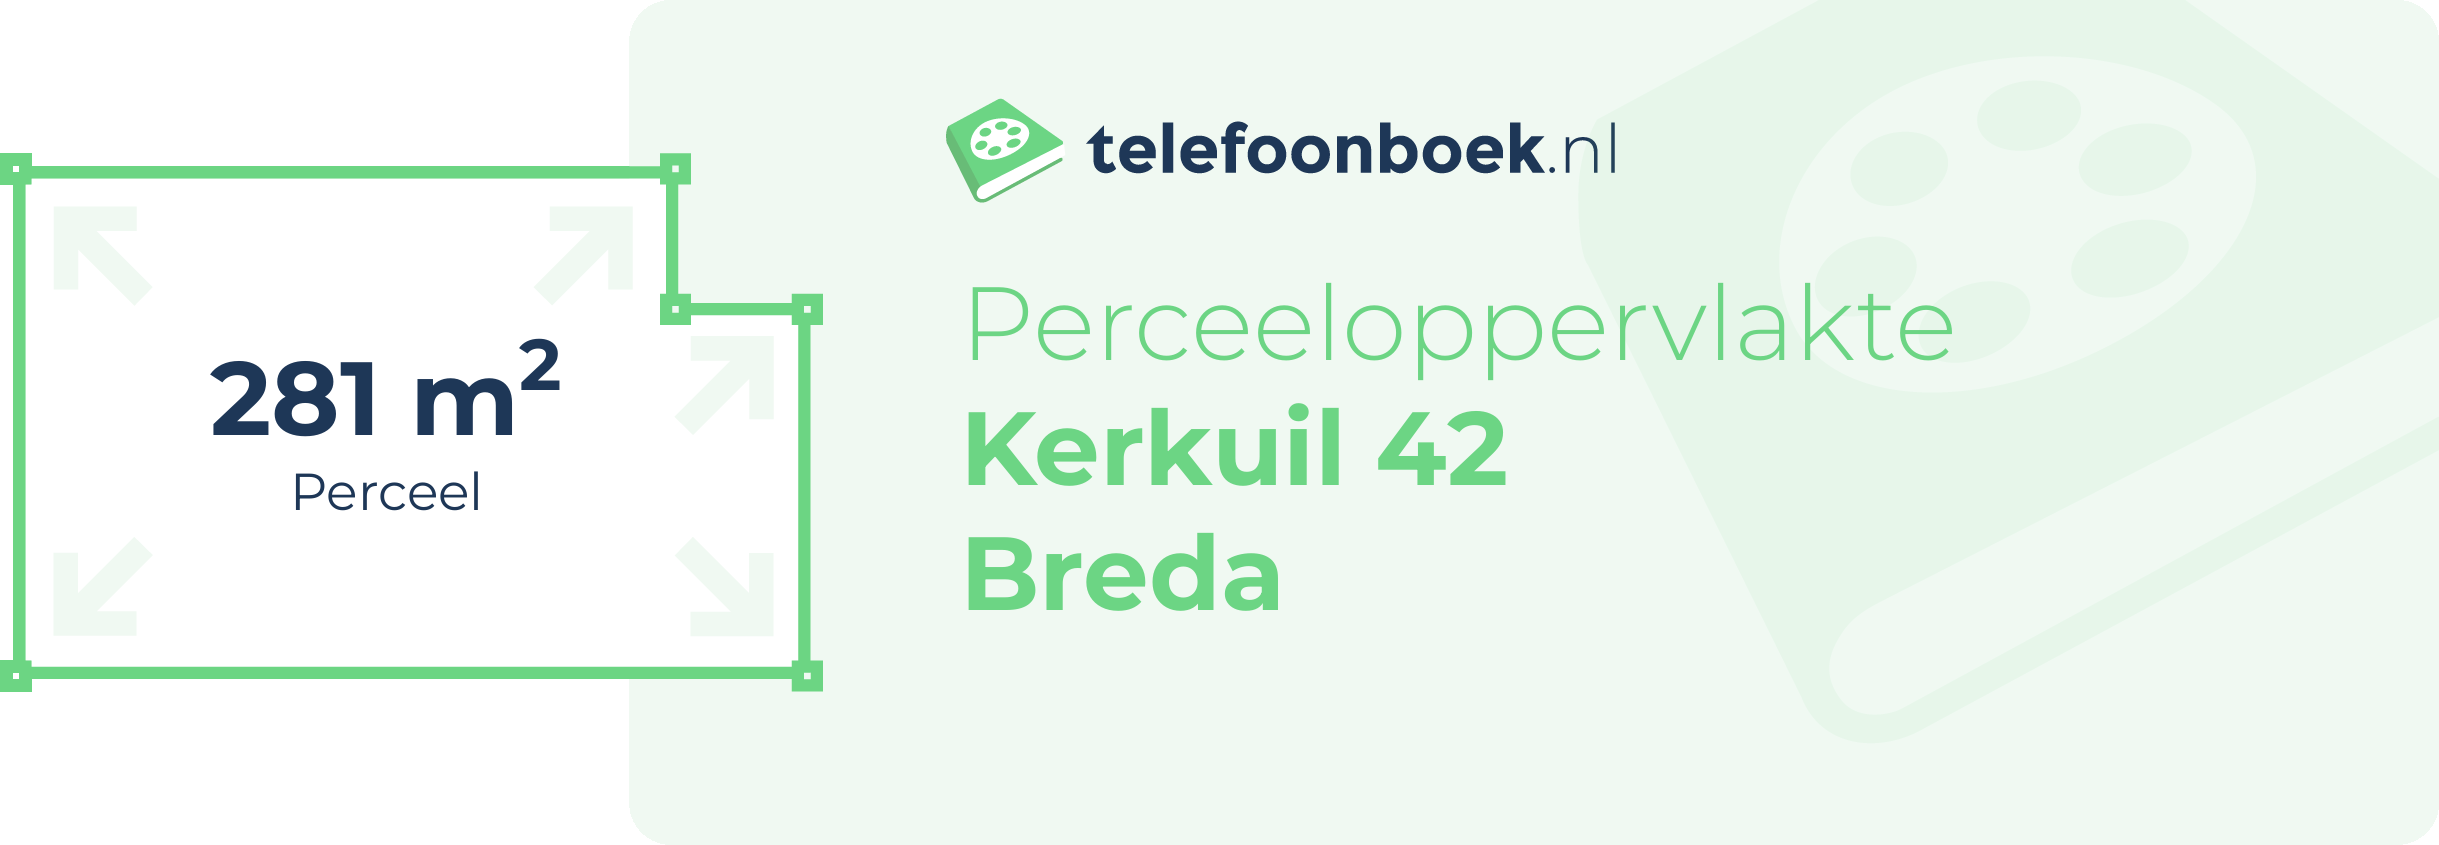 Perceeloppervlakte Kerkuil 42 Breda